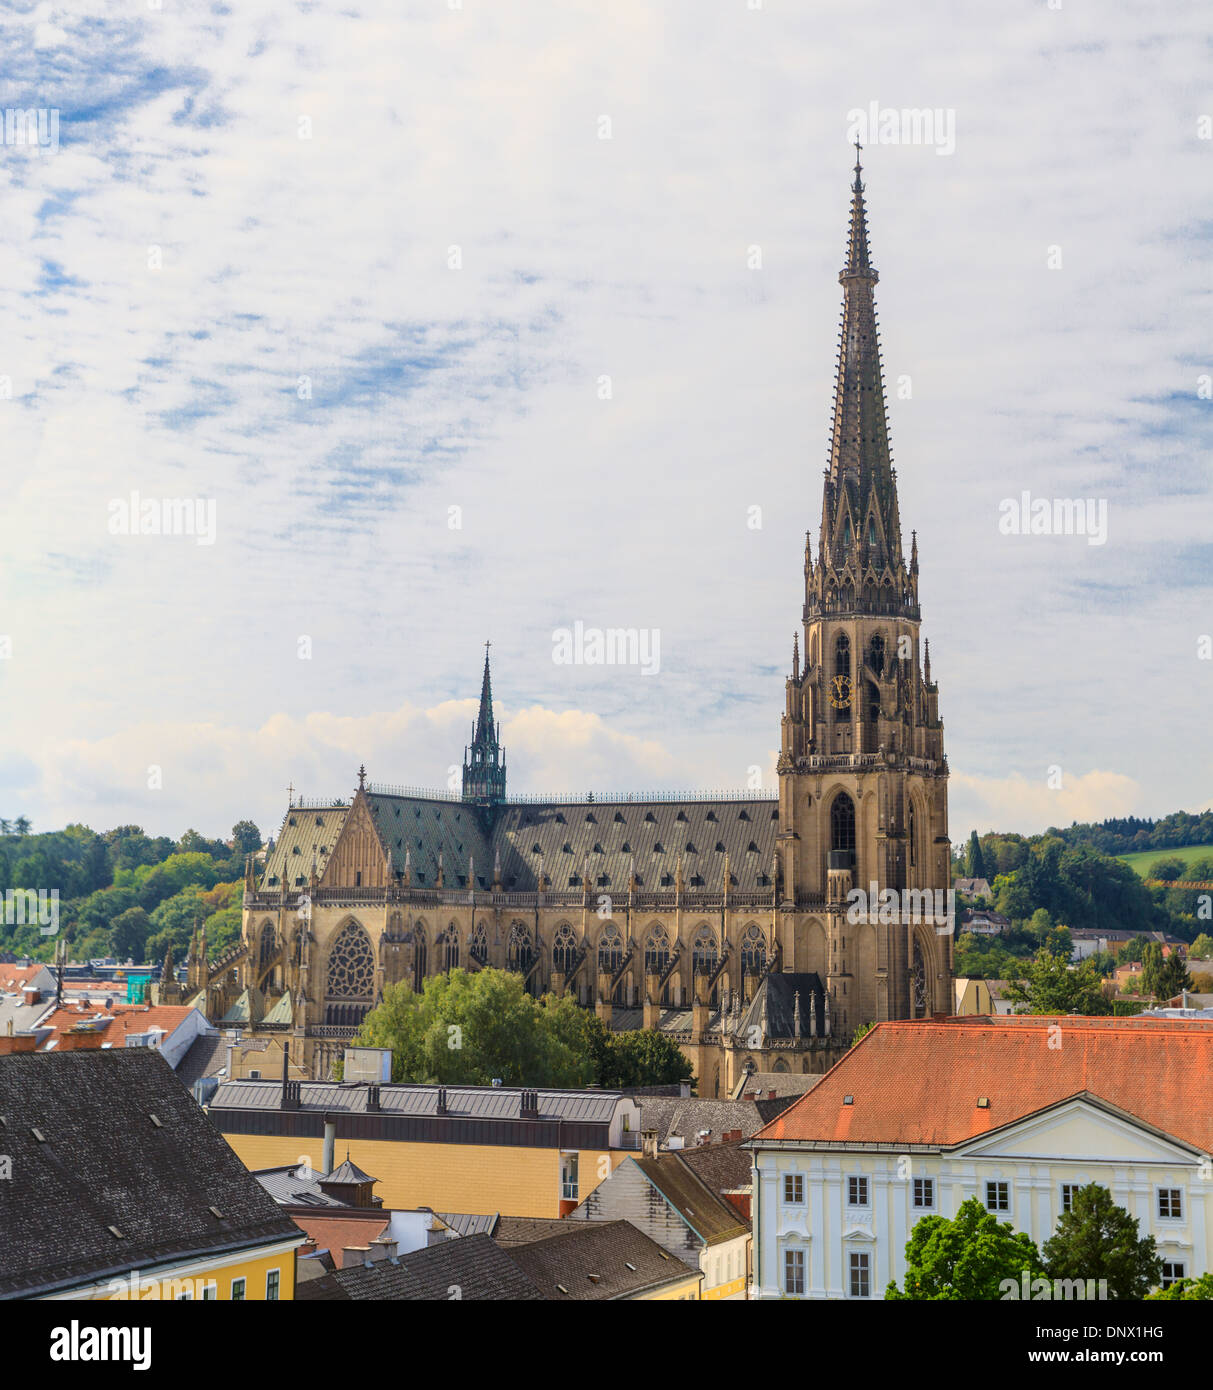 La ville de Linz avec nouvelle cathédrale, Autriche Banque D'Images